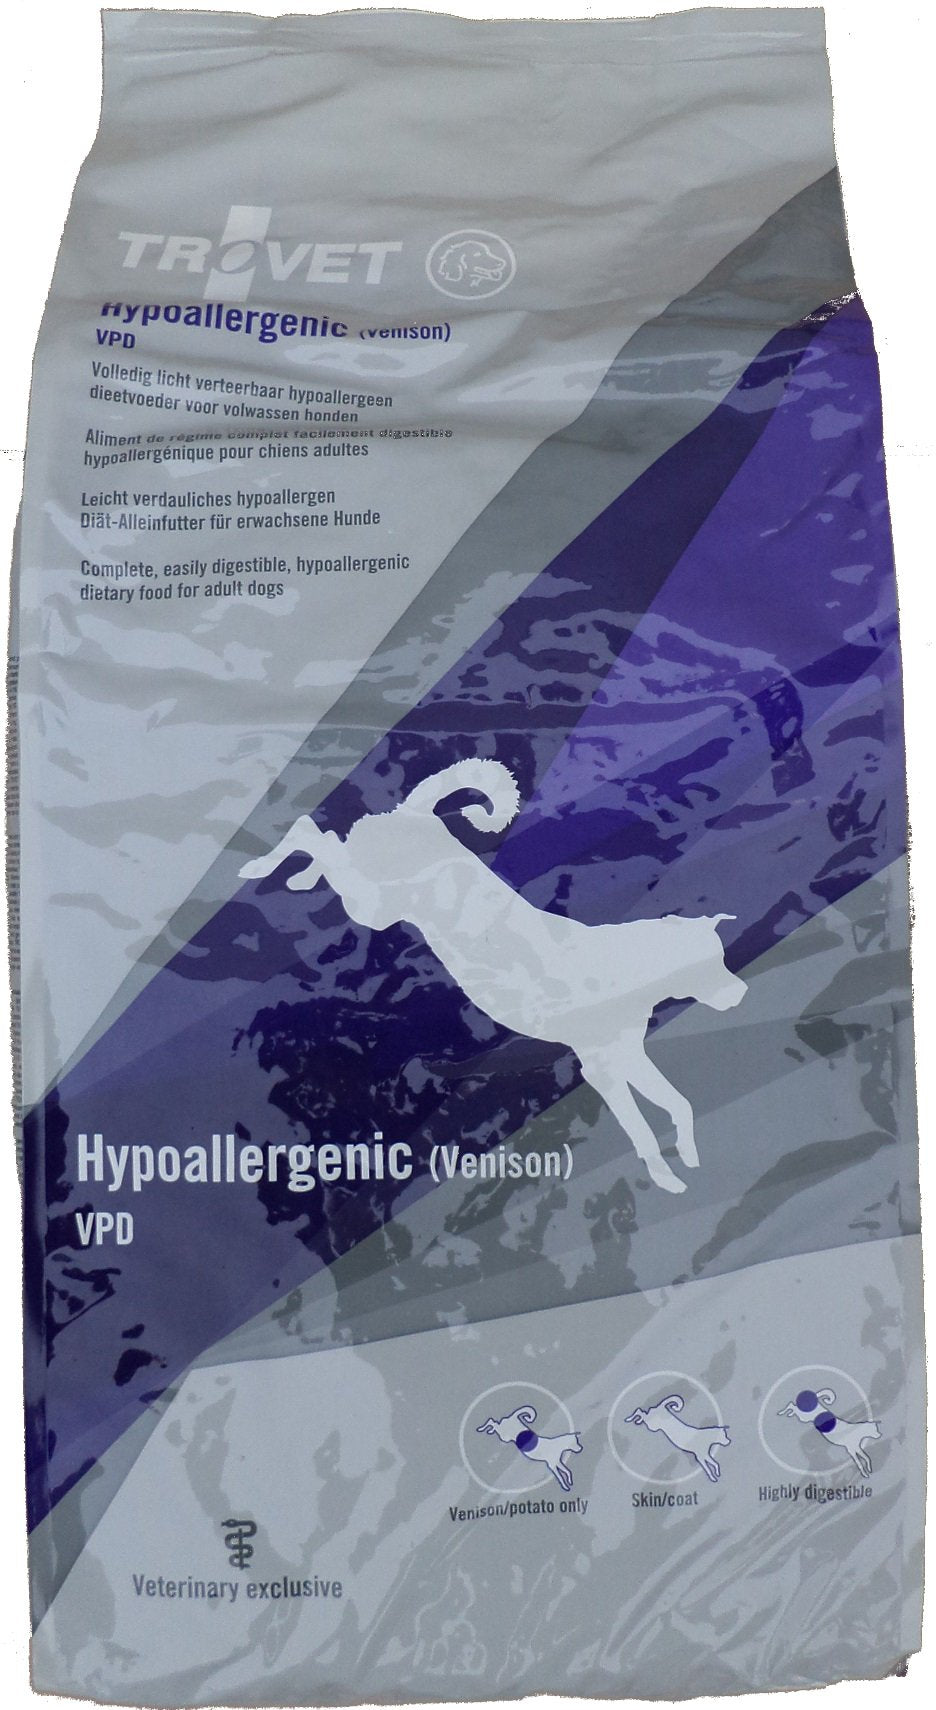 10kg Trovet VPD Hypoallergenic Hirsch Diät Hundefutter